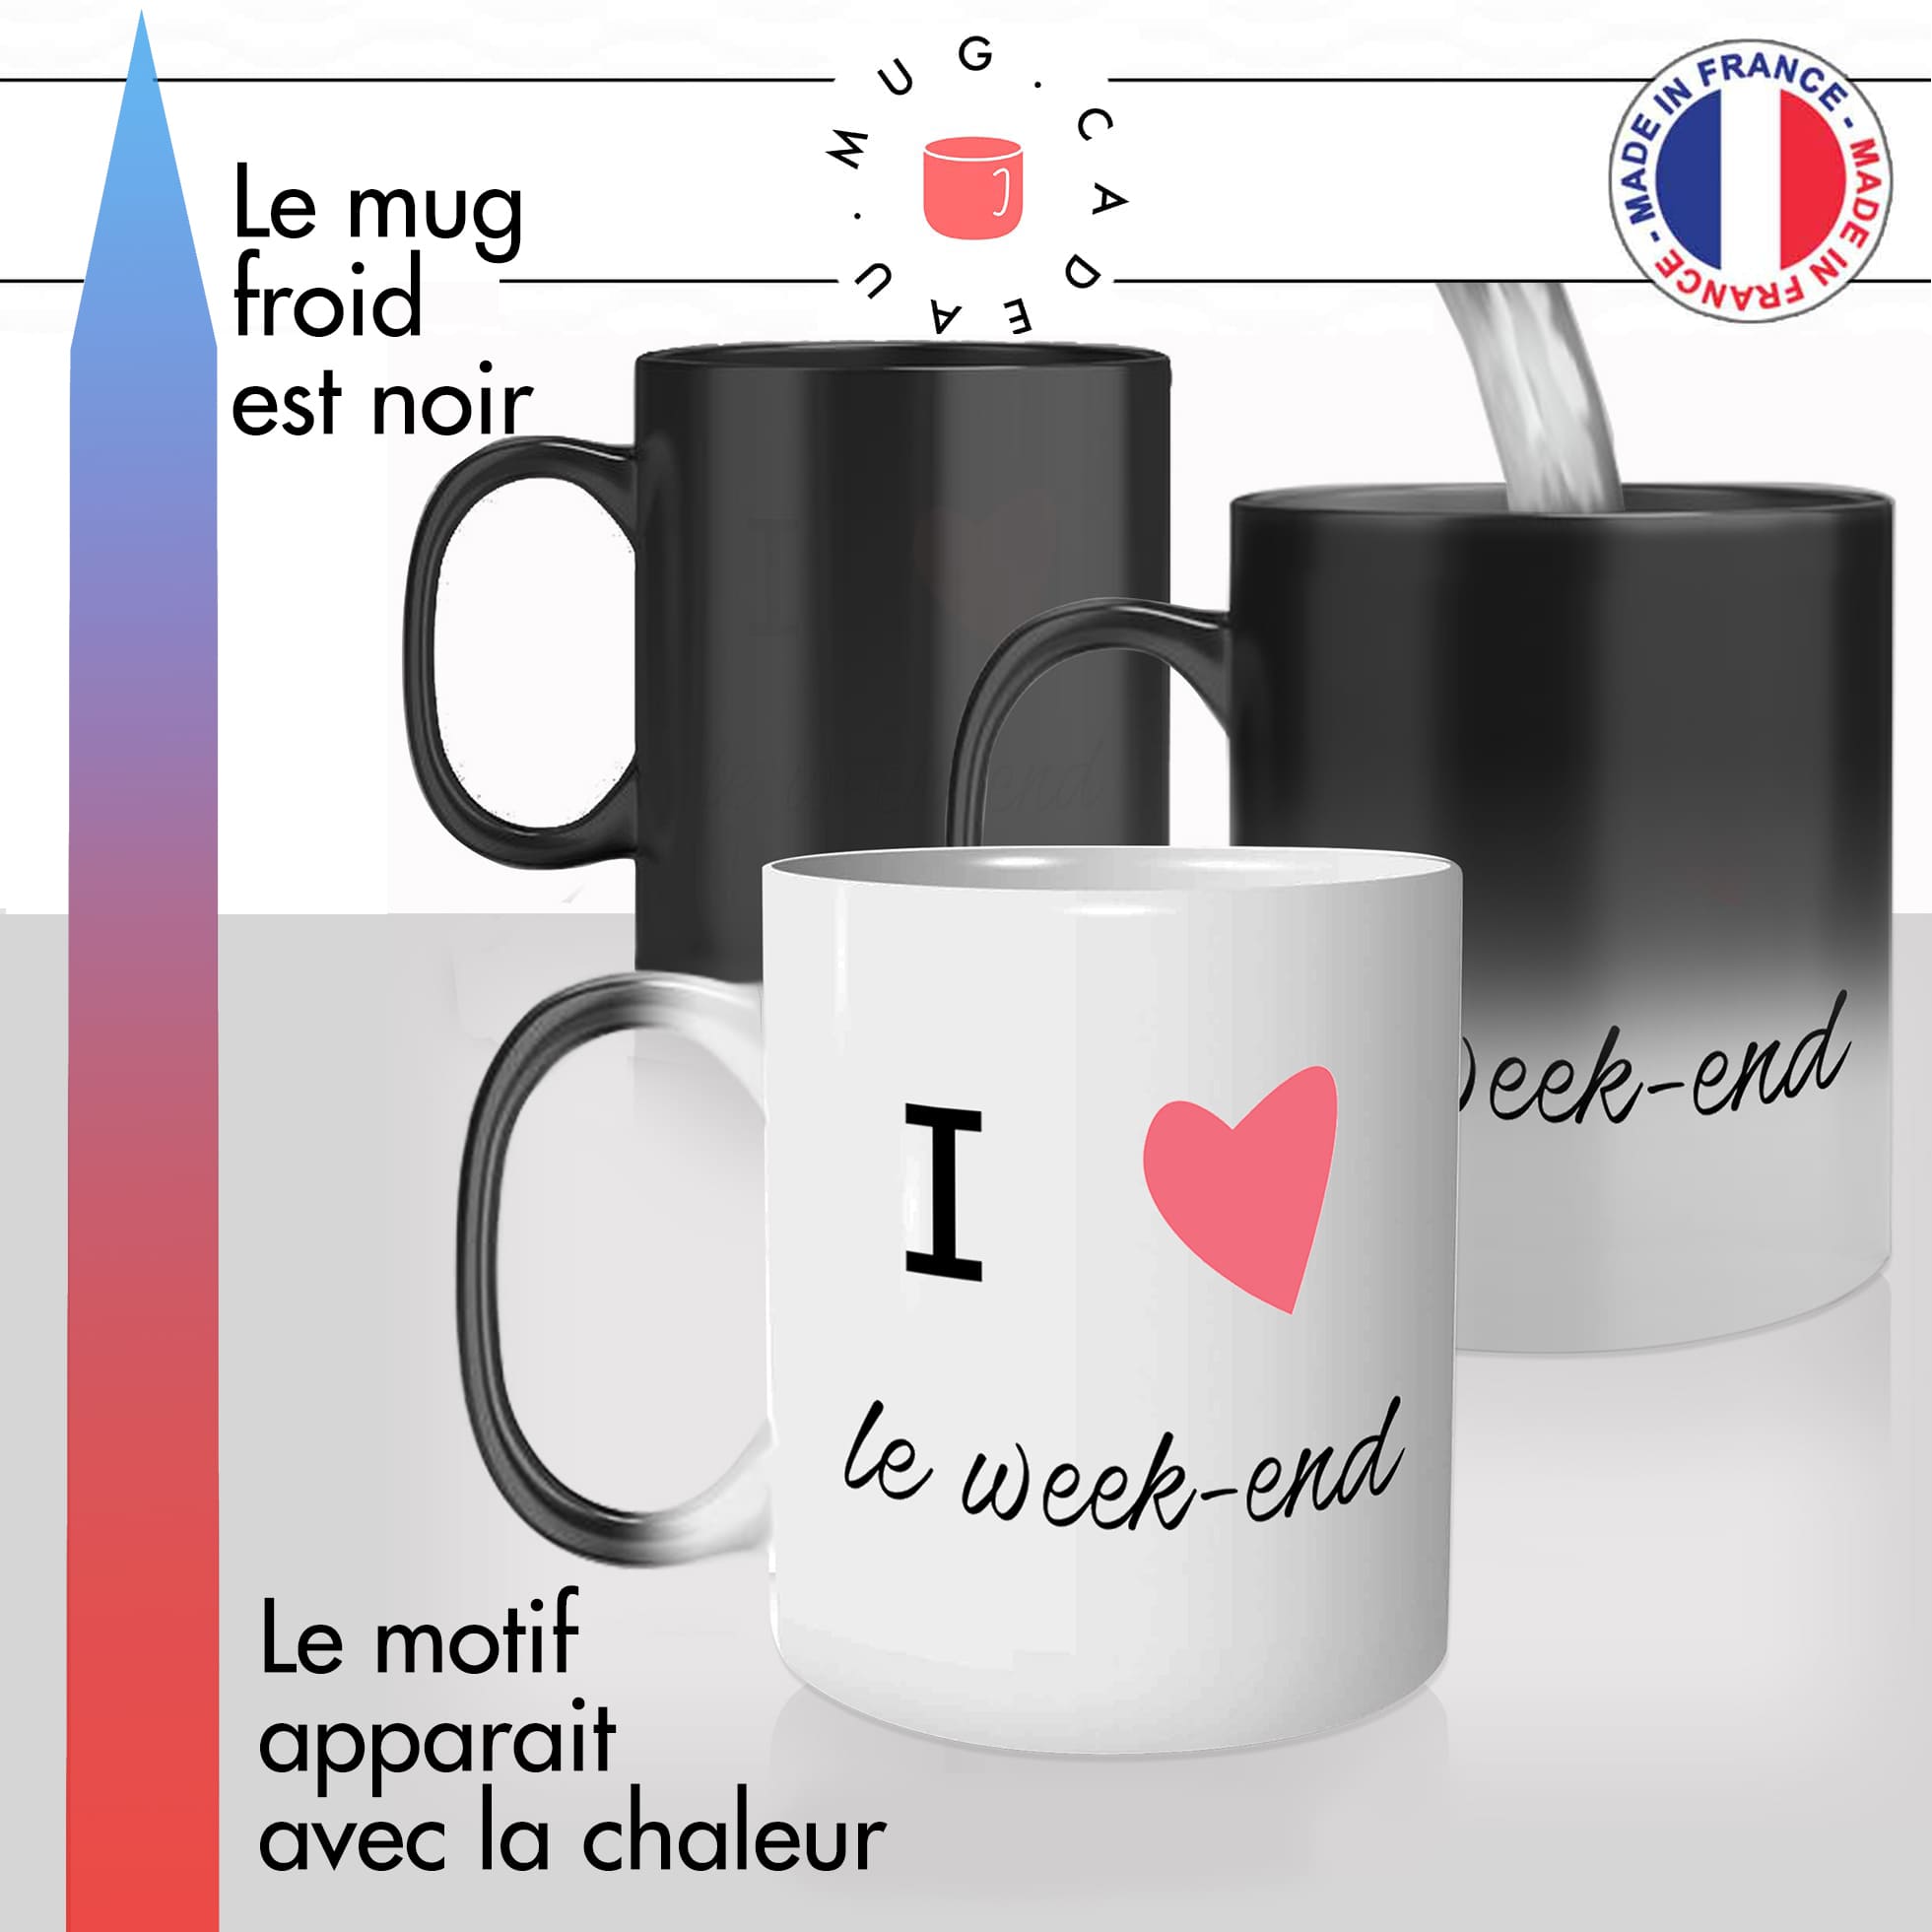 mug magique thermoréactif thermo chauffant personnalisé gastronomie francaise i love week end france idée cadeau fun original